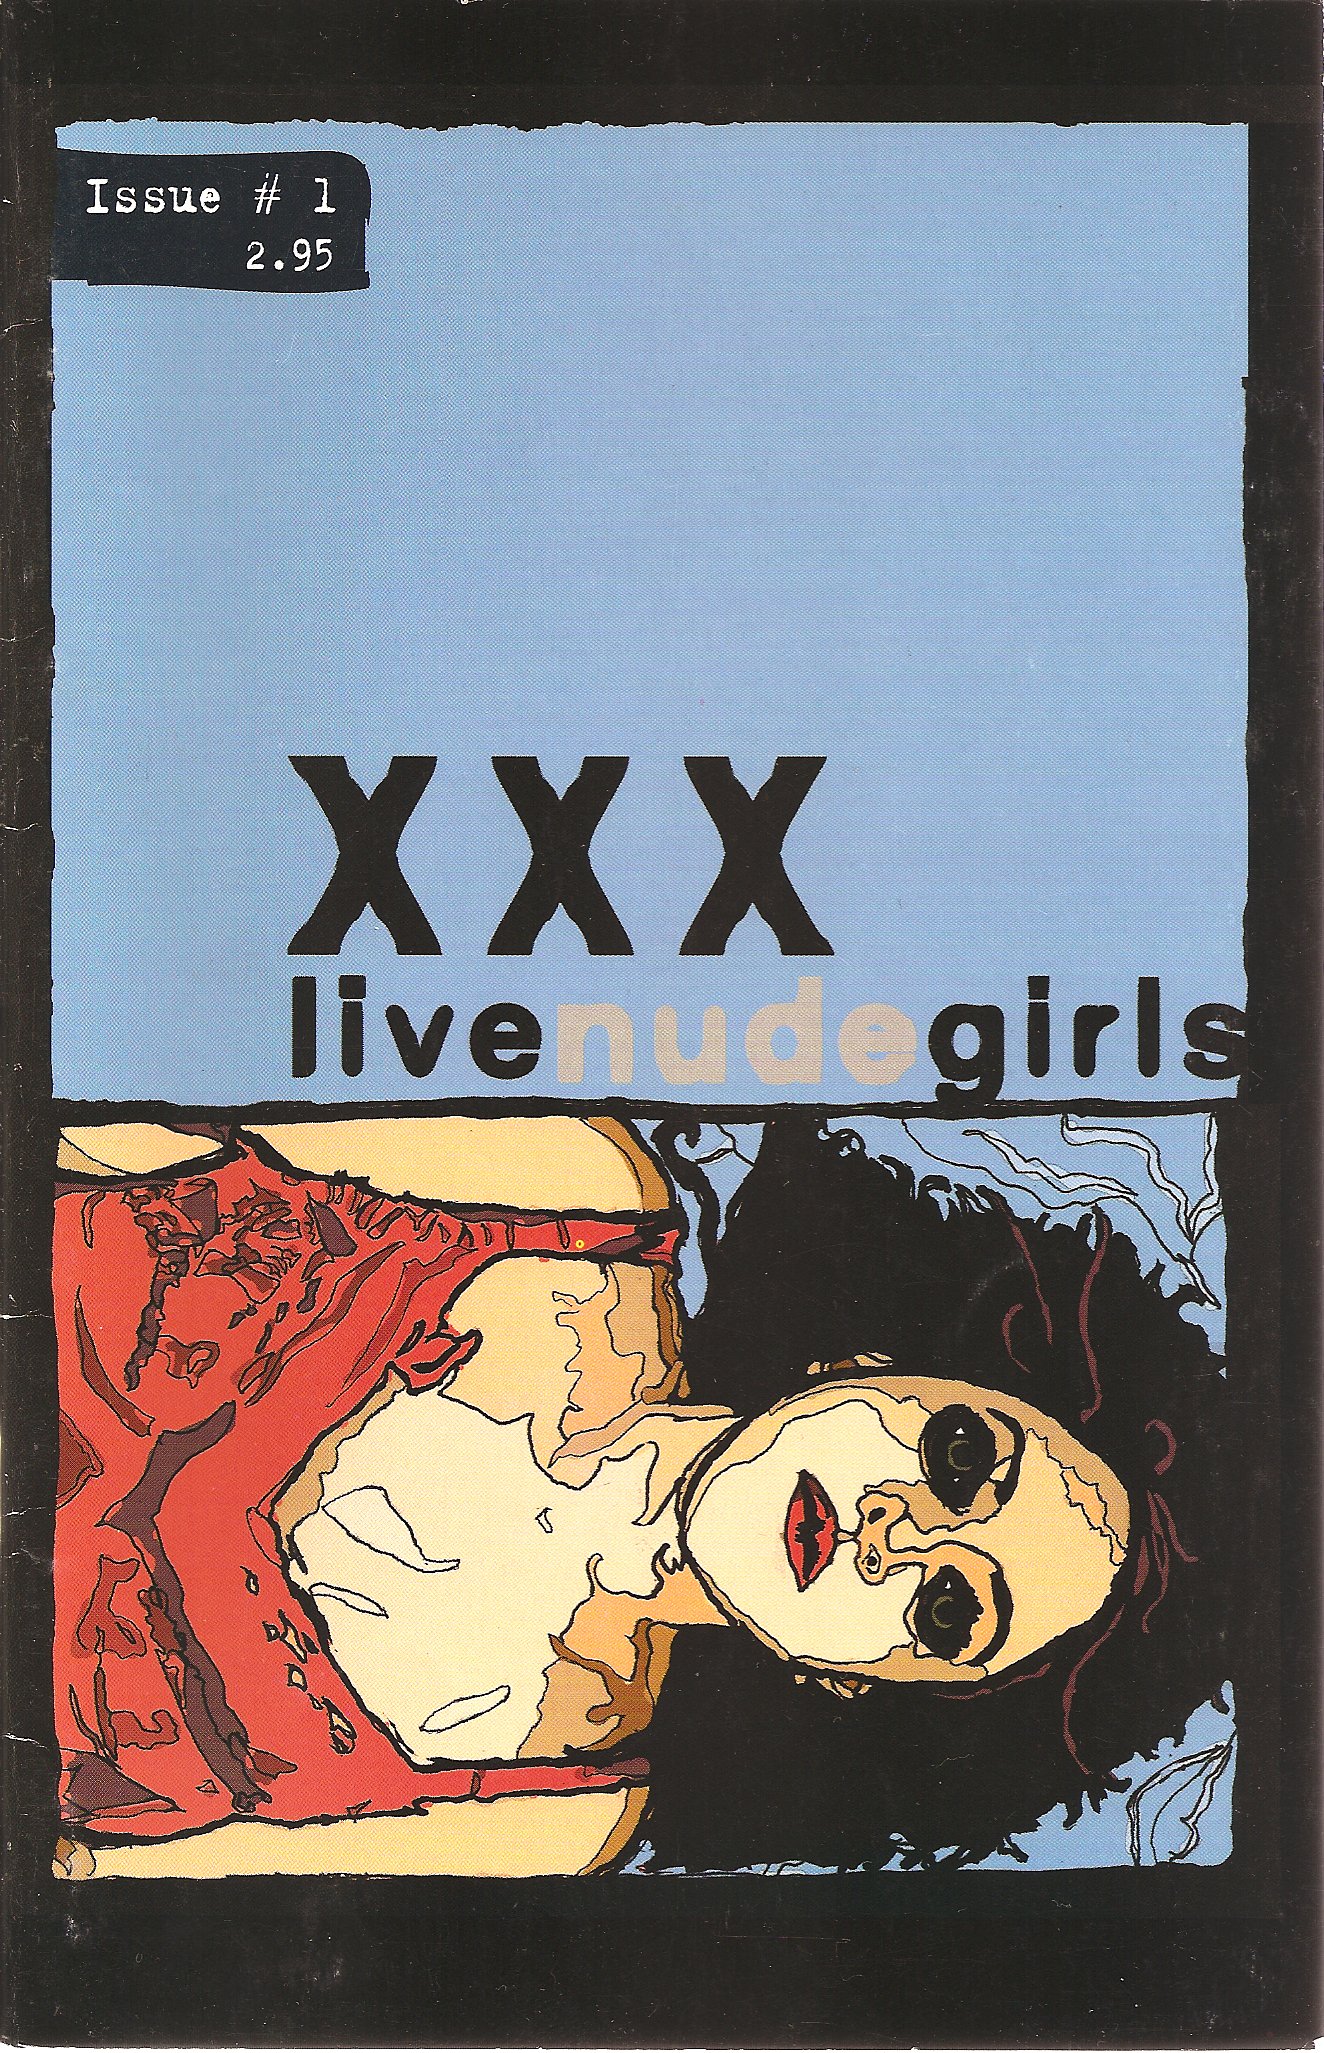 xxx live nude girls three stories sex drugs rage nikki coffman laurenn mccubbin books 3